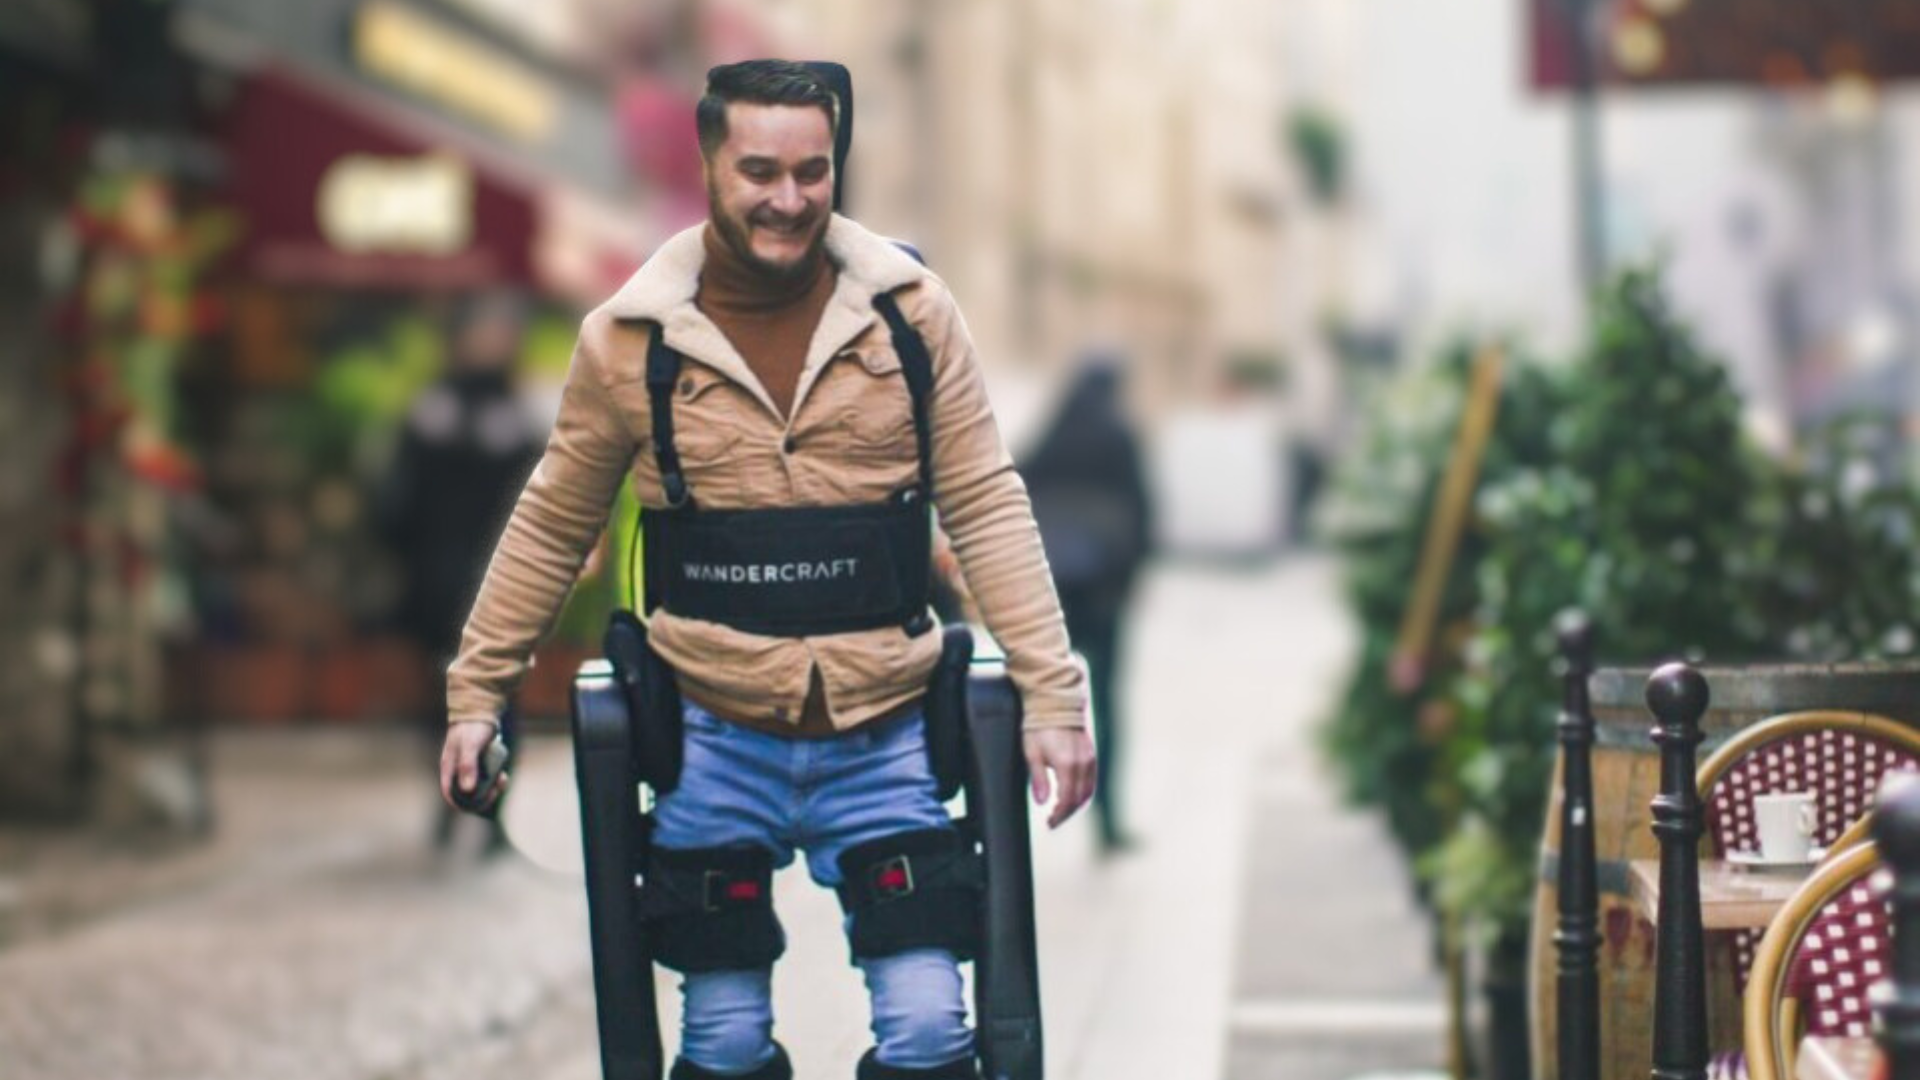 Exoskeleton Technology Shines at Paris Olympics